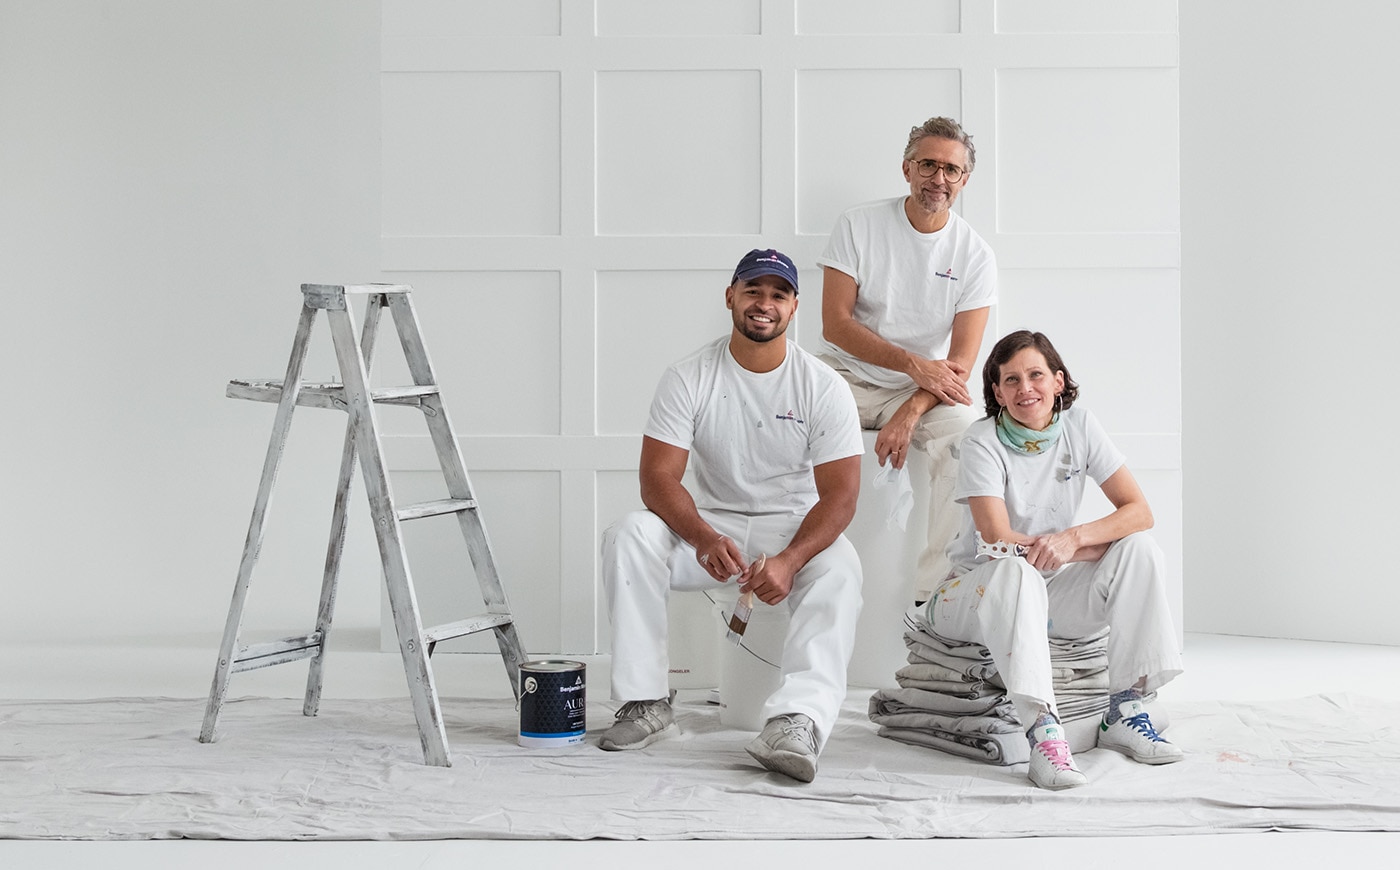 Trois peintres – deux hommes et une femme – sont assis sur une toile de peintre posée sur le plancher d’une pièce blanche d’apparence industrielle aux cadres de fenêtres noirs.